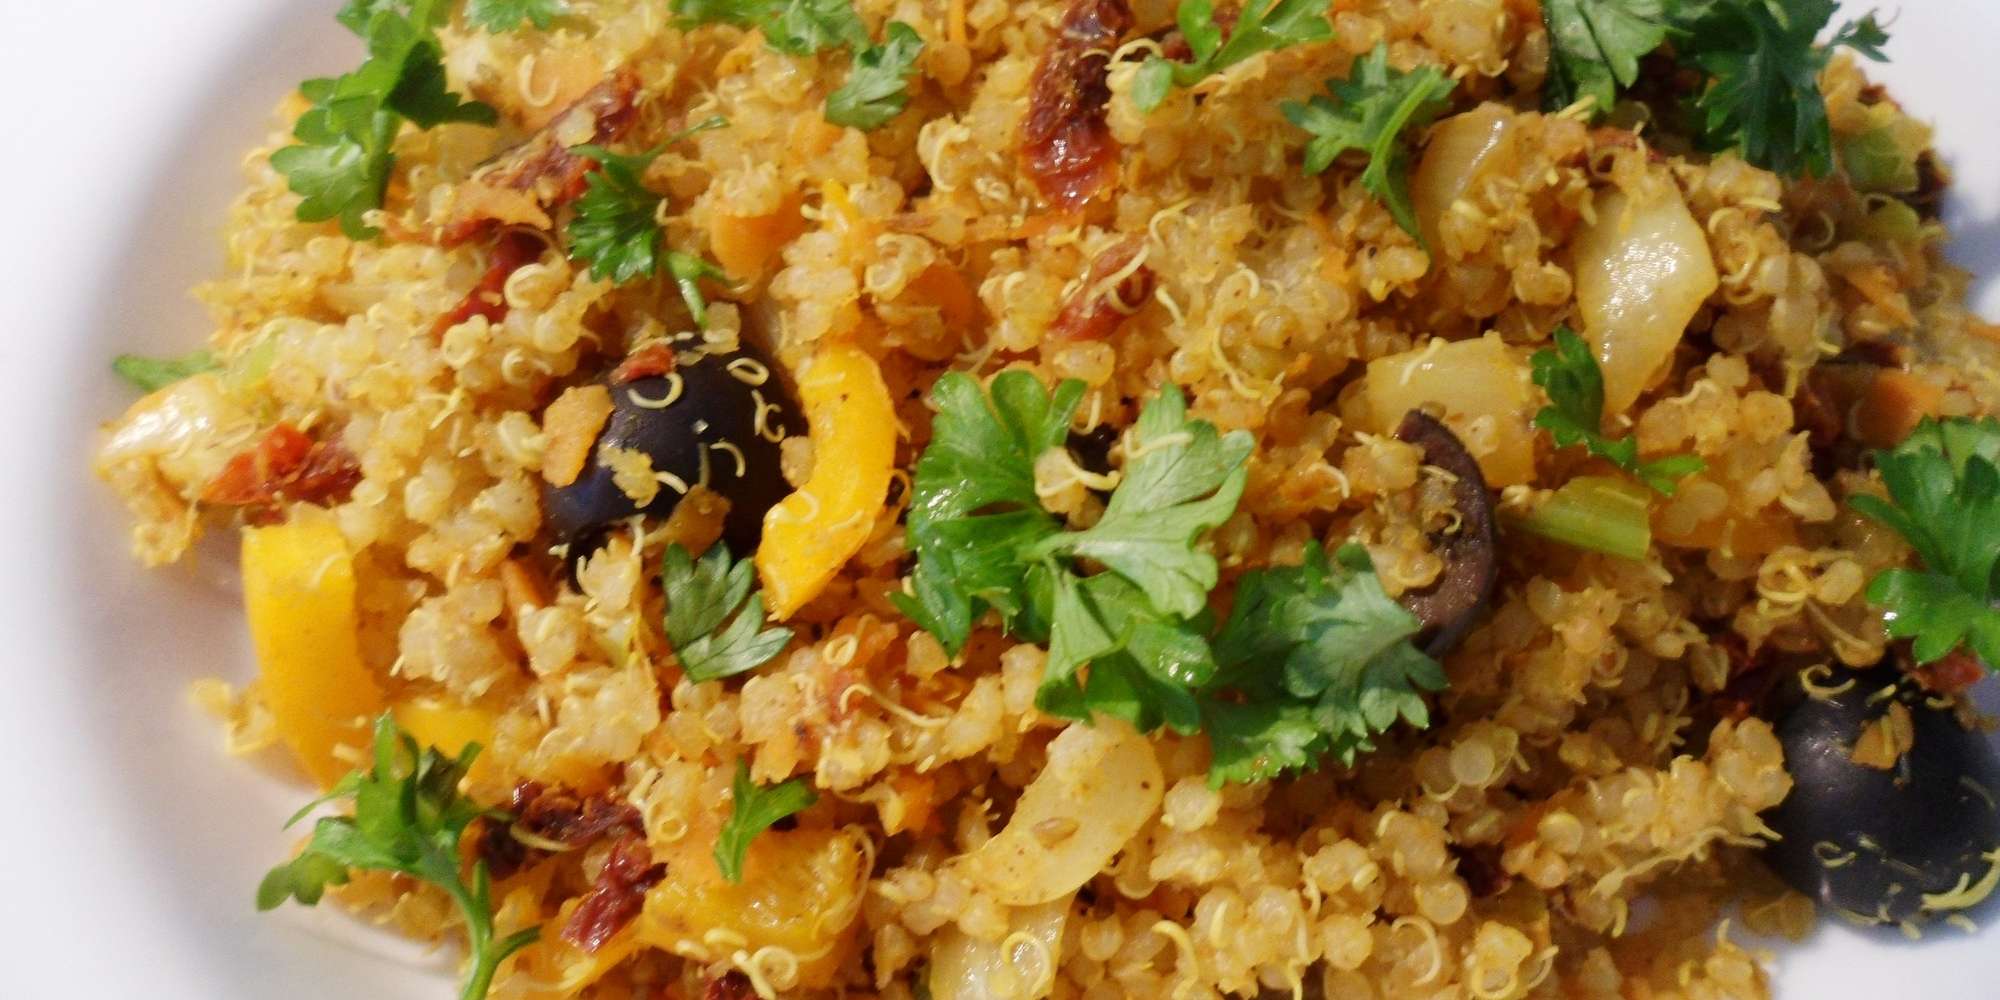 Moroccan Inspired Quinoa